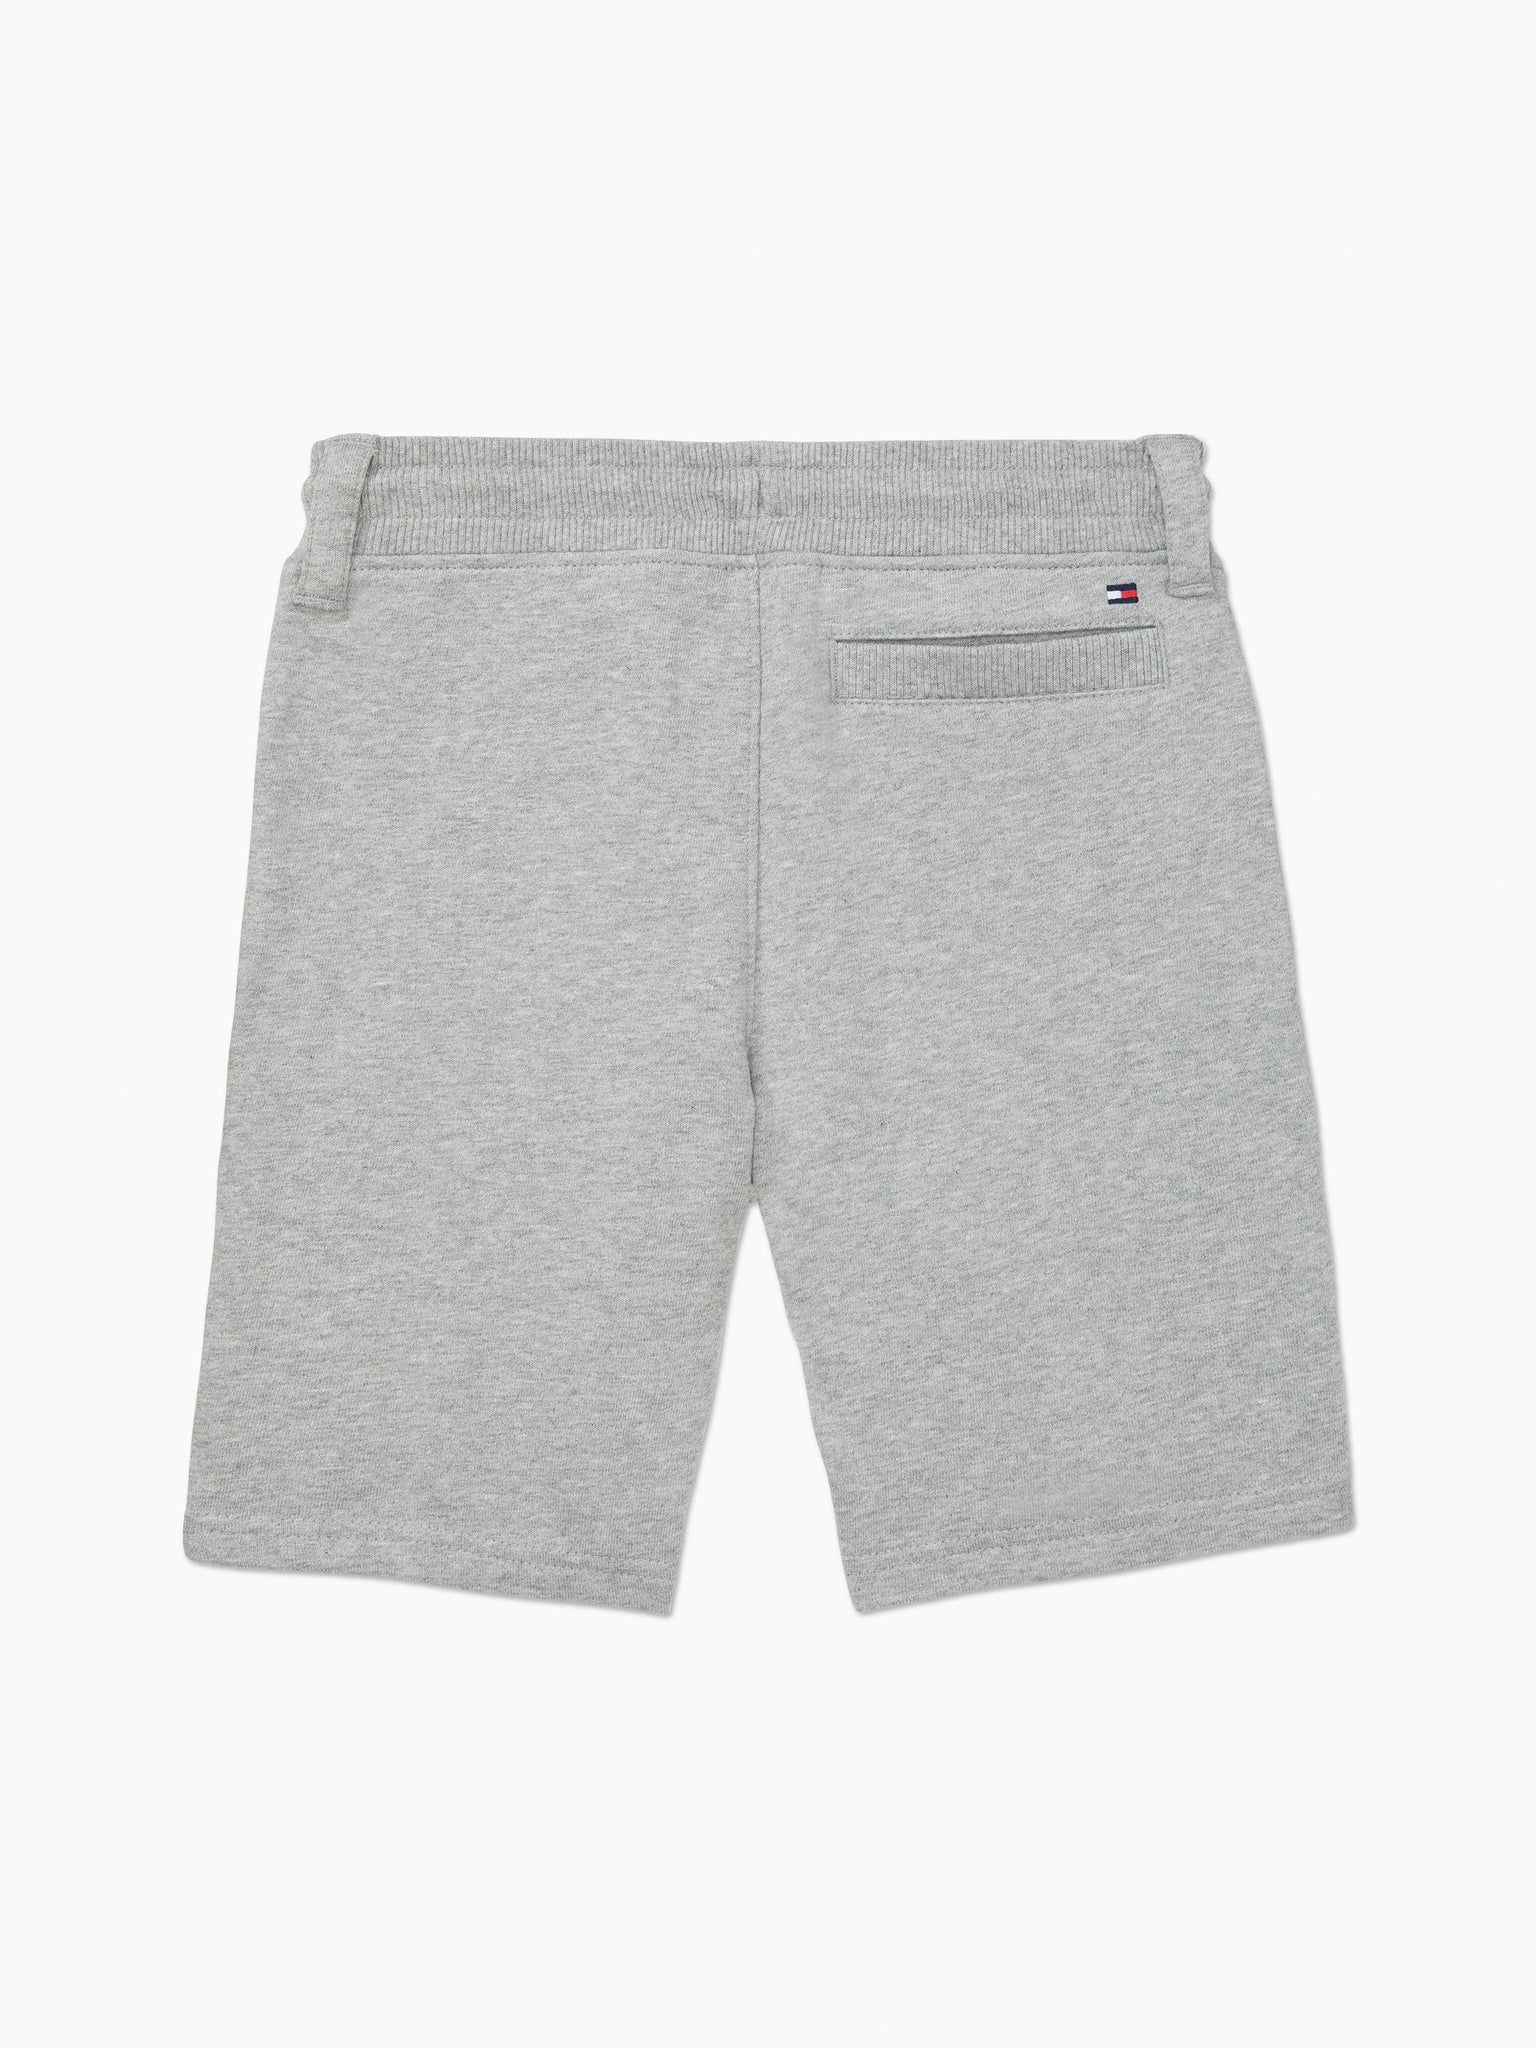 Essential Shorts (Kids) - Grey Heather